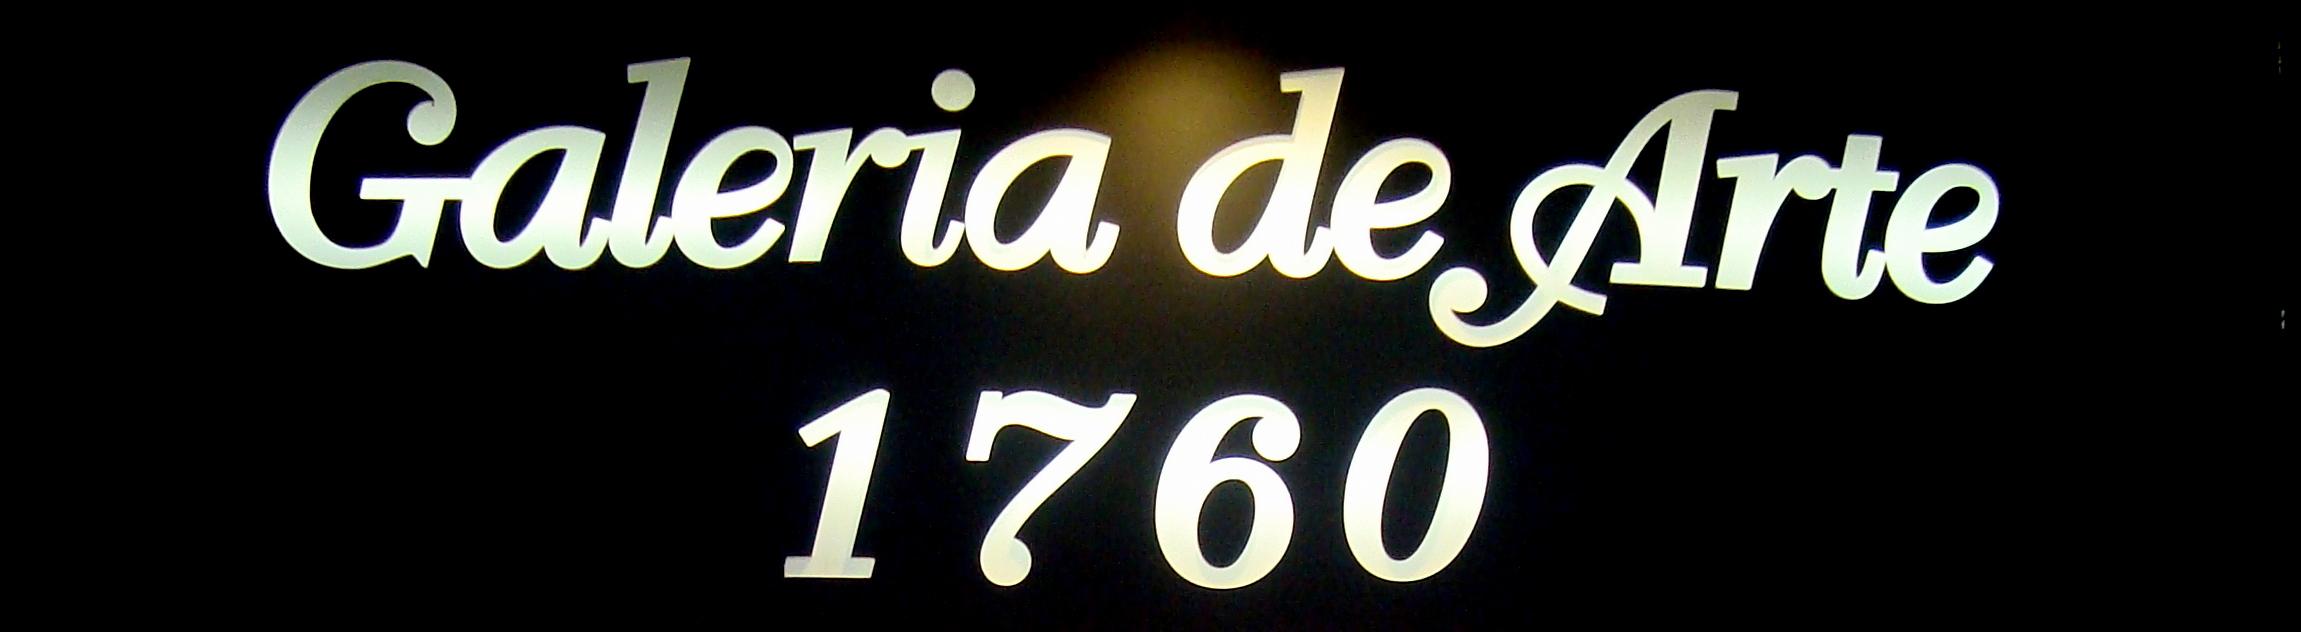 Galeria de Arte 1760 logo